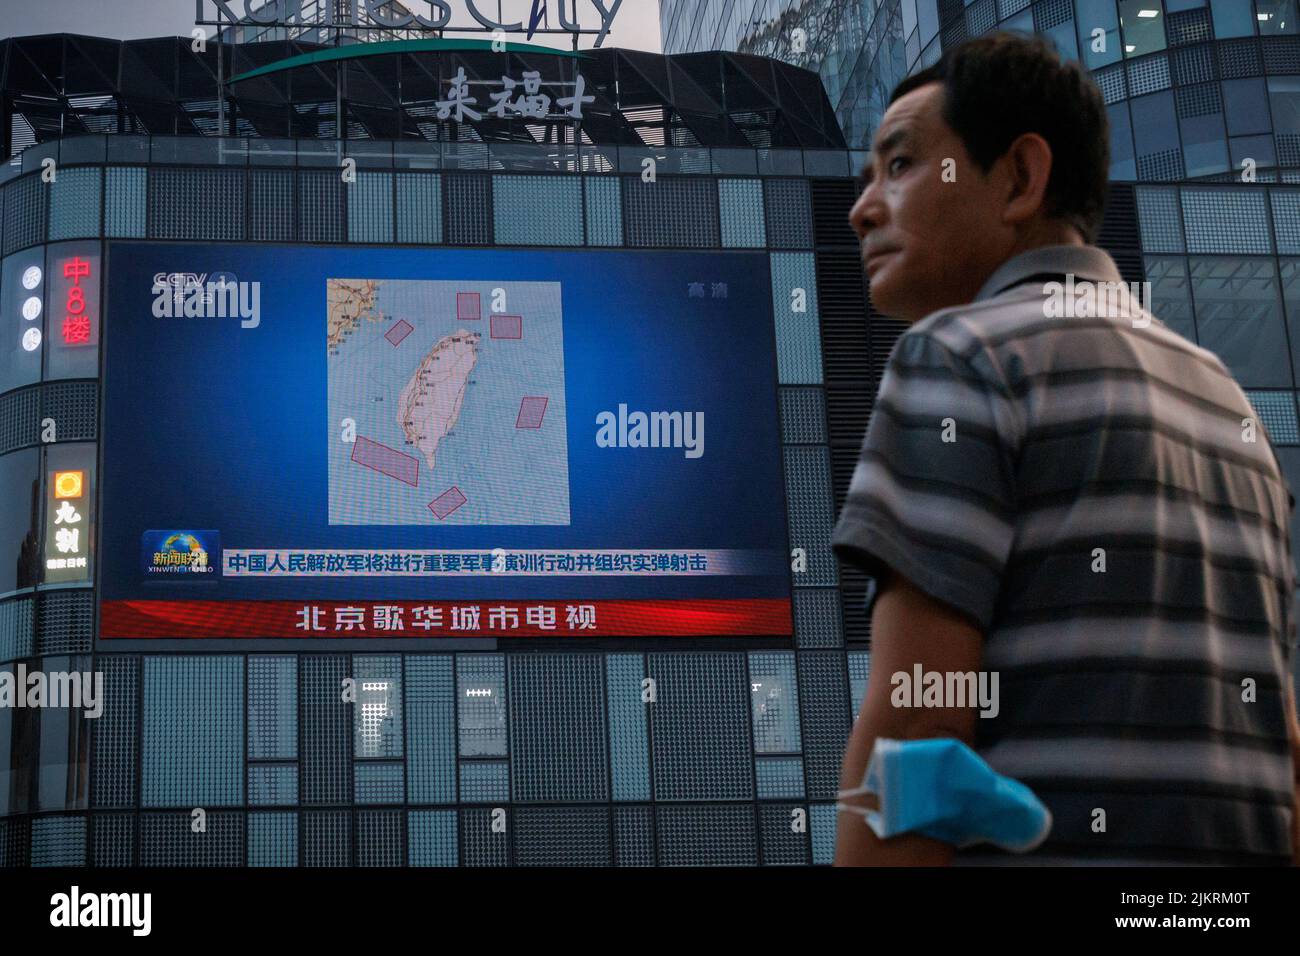 Un homme se tient devant un écran présentant une émission de télévision en circuit fermé, avec une carte des endroits autour de Taïwan où l'Armée populaire de libération de la Chine (APL) effectuera des exercices militaires et des activités de formation, y compris des exercices de tir en direct, dans un centre commercial de Pékin, en Chine, au 3 août 2022. REUTERS/Thomas Peter Banque D'Images